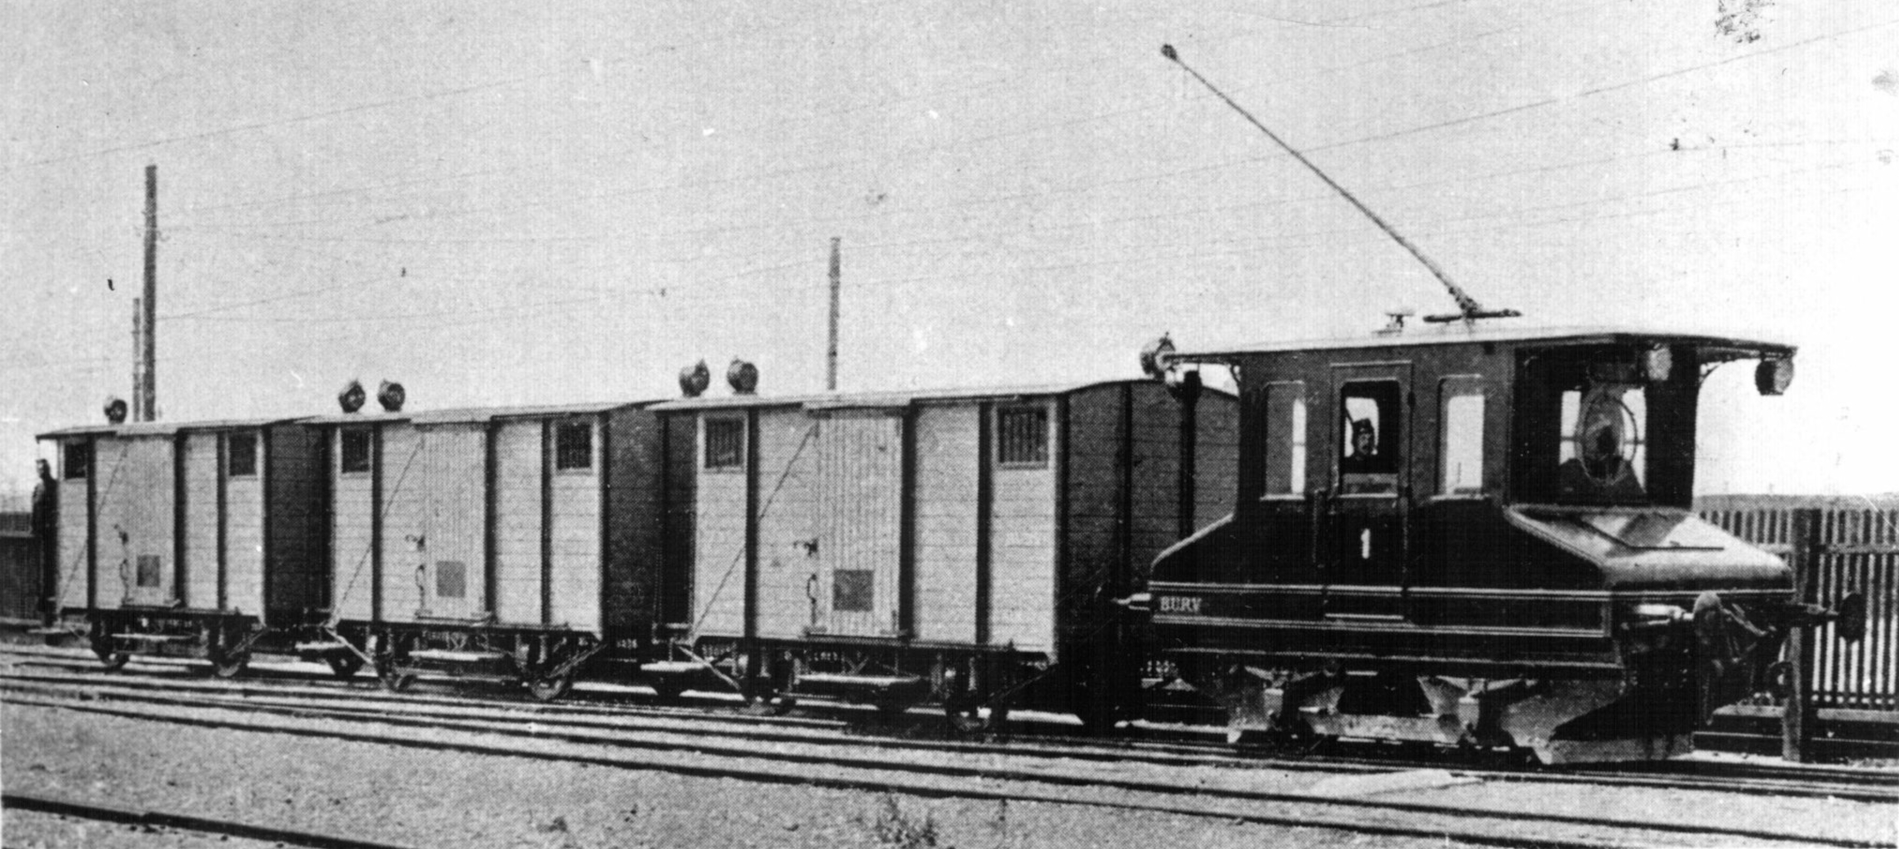 Az 1 pályaszámú mozdony három BURV élelmiszer-szállító fedeH kocsival